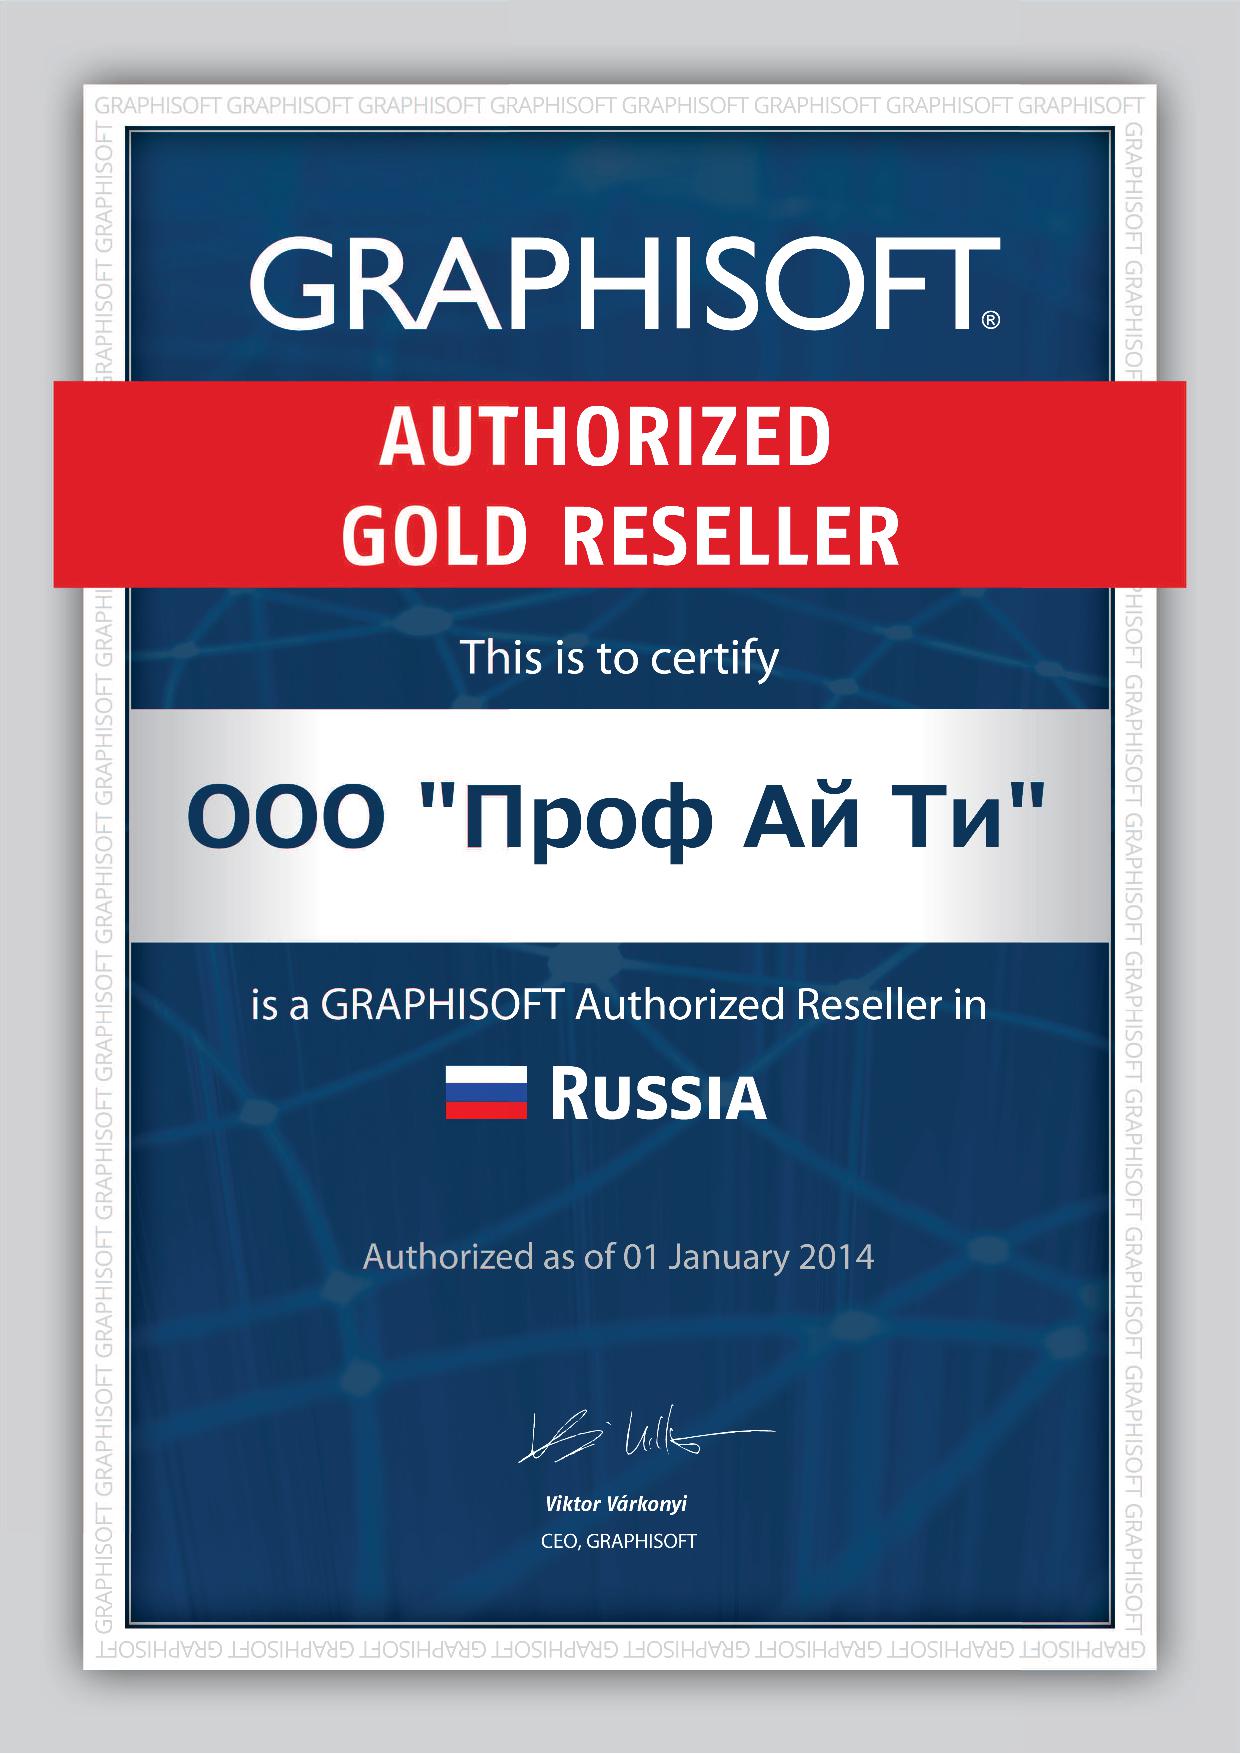 Сертификат Graphisoft